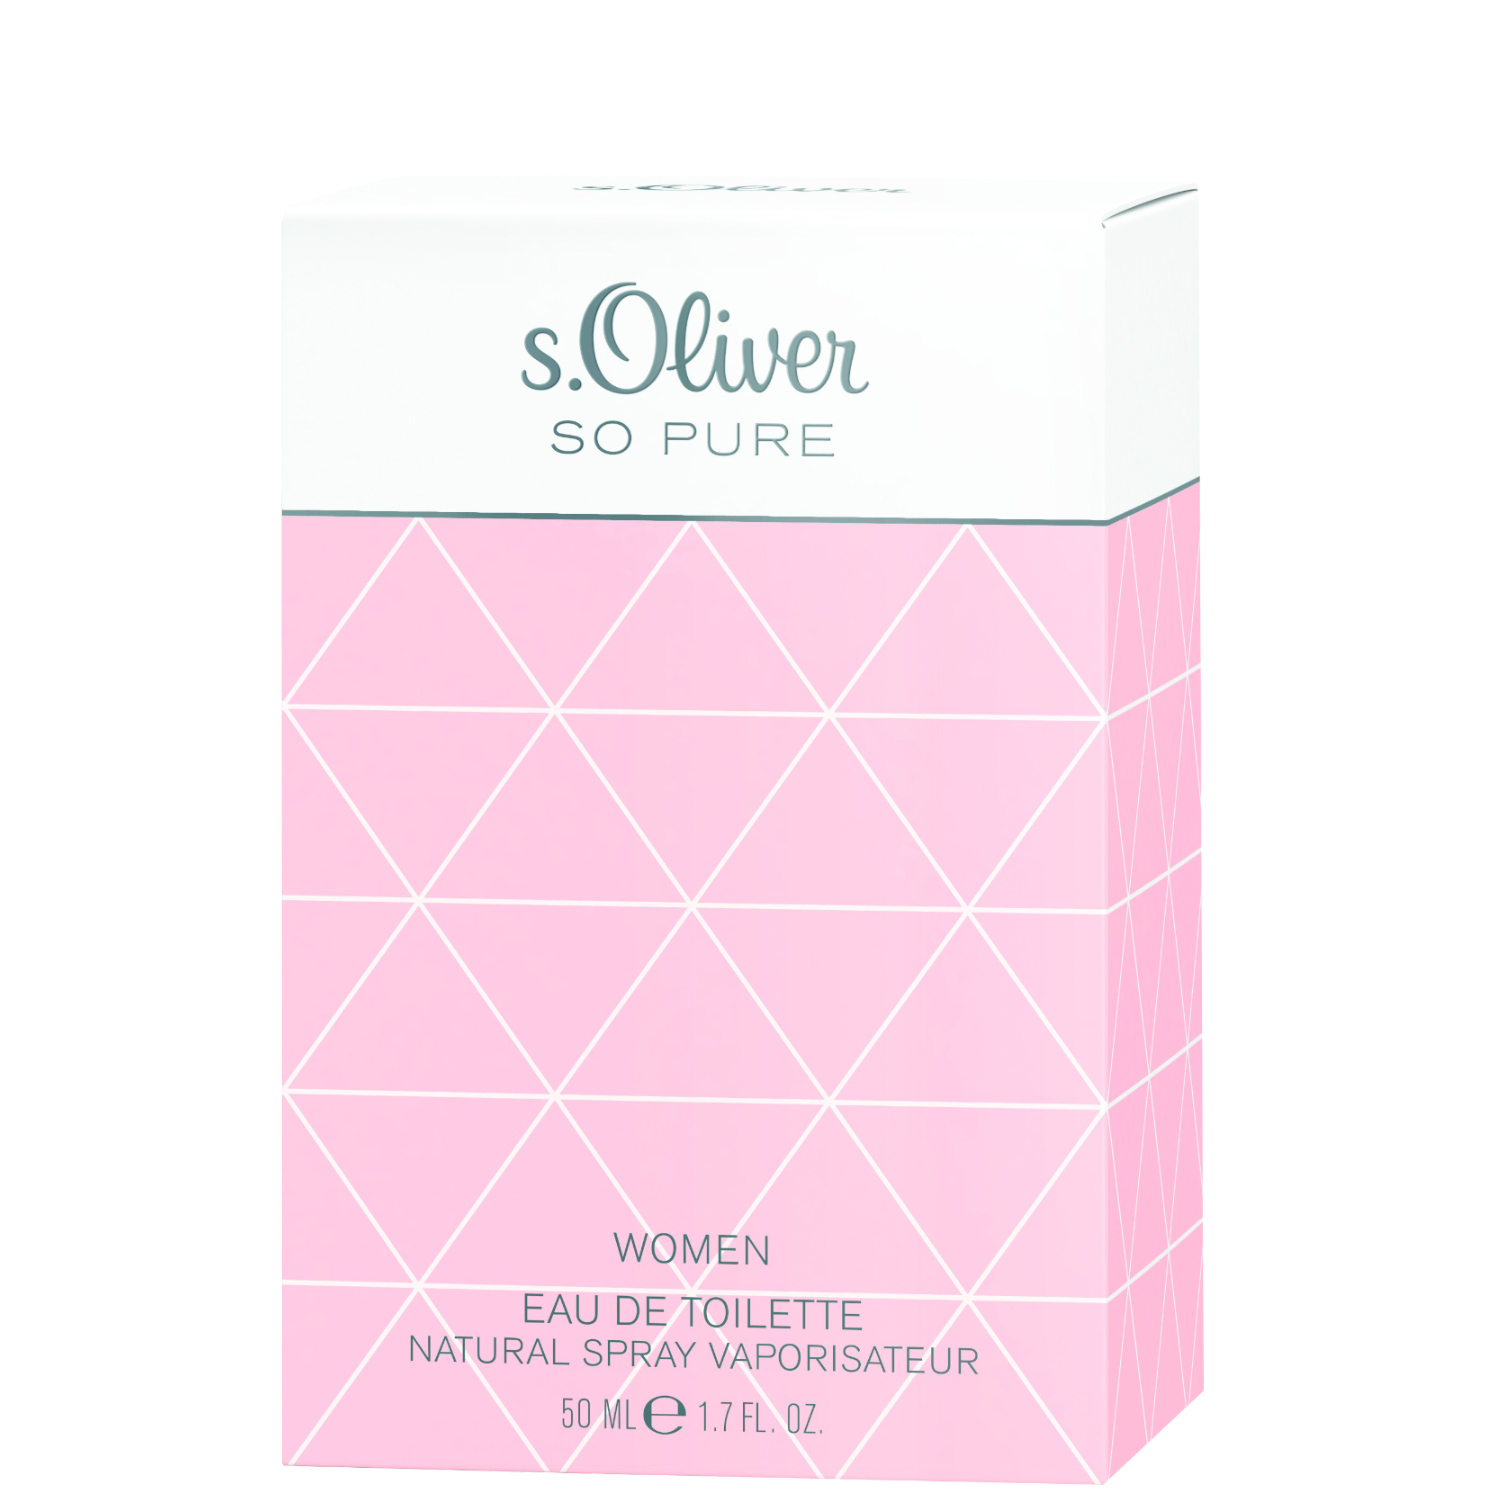 S.Oliver So Pure Women Eau de Toilette 50ml